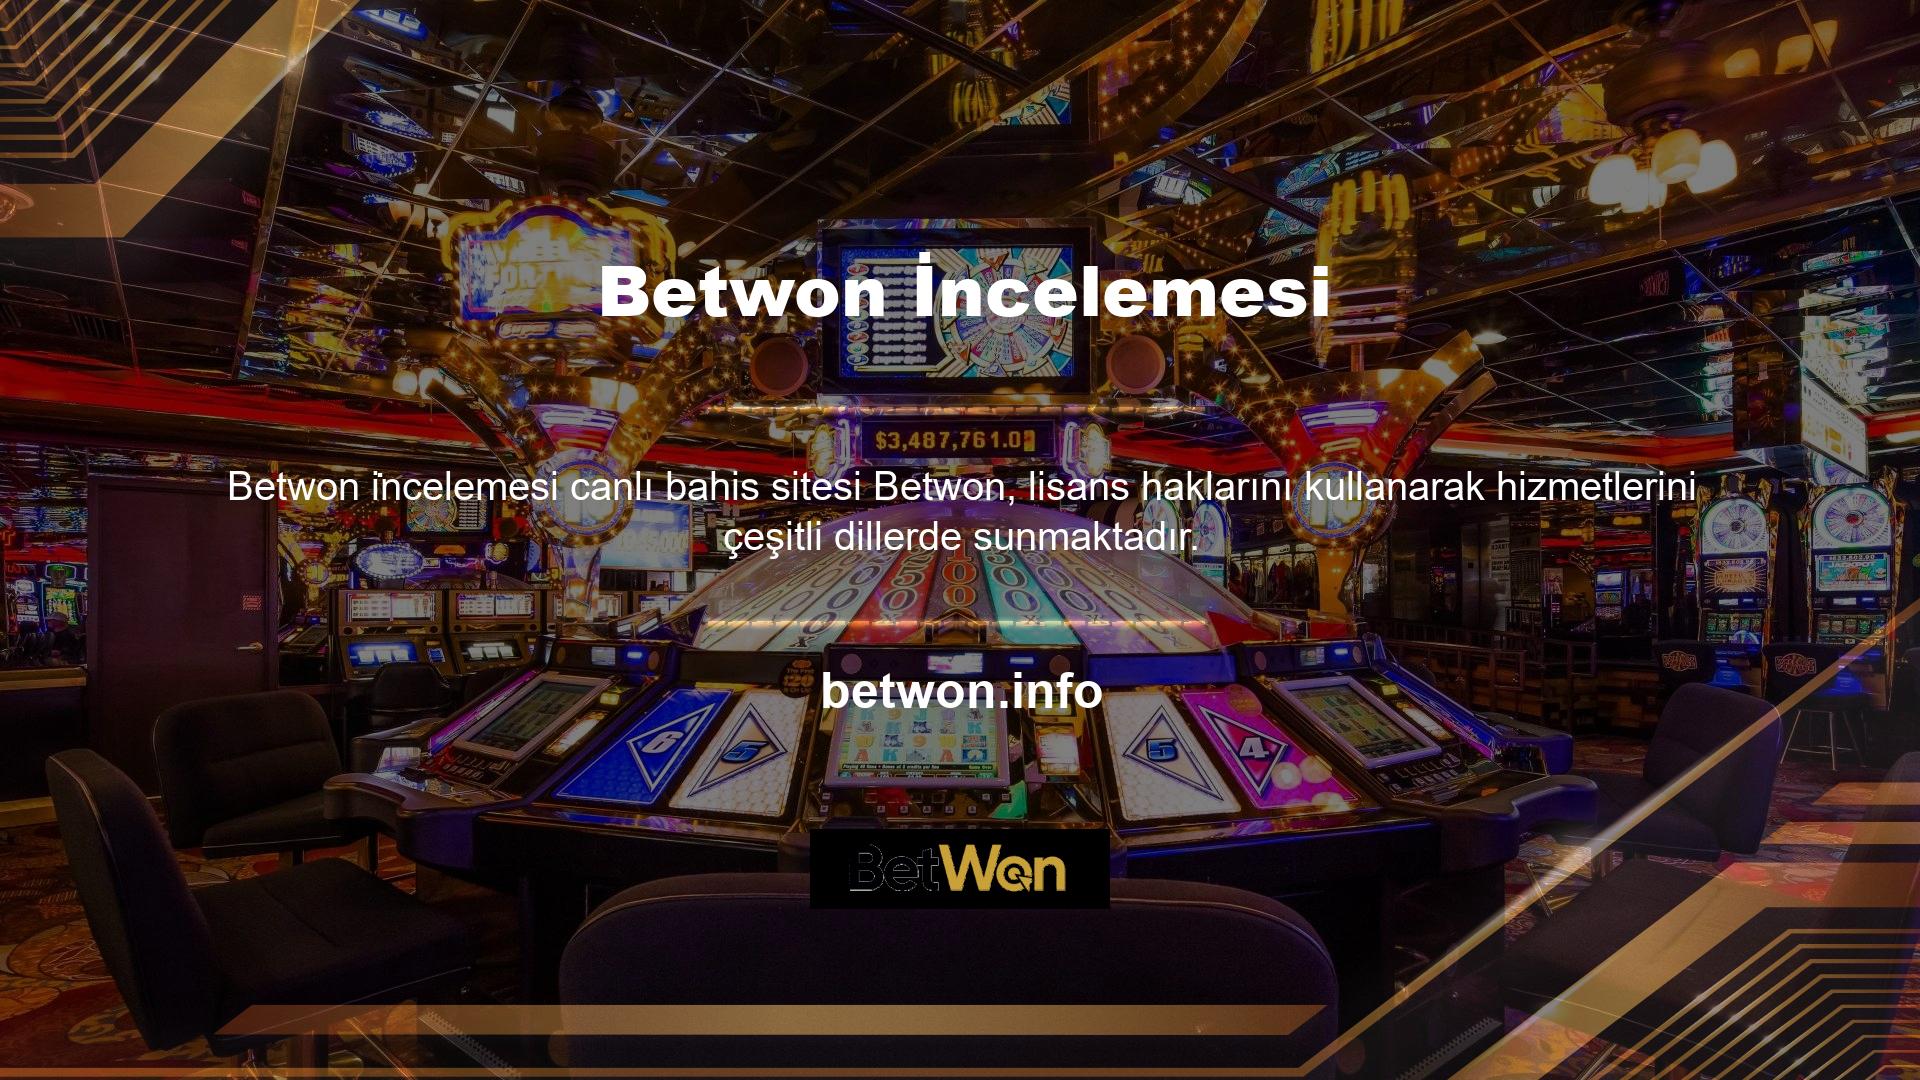 Spor, casino ve slot bahisleri sunan canlı bahis siteleri mavi ve gri renkleri kullanmakta ve üyelerinin çeşitli konseptlerle oyunlara katılmasına olanak sağlamaktadır